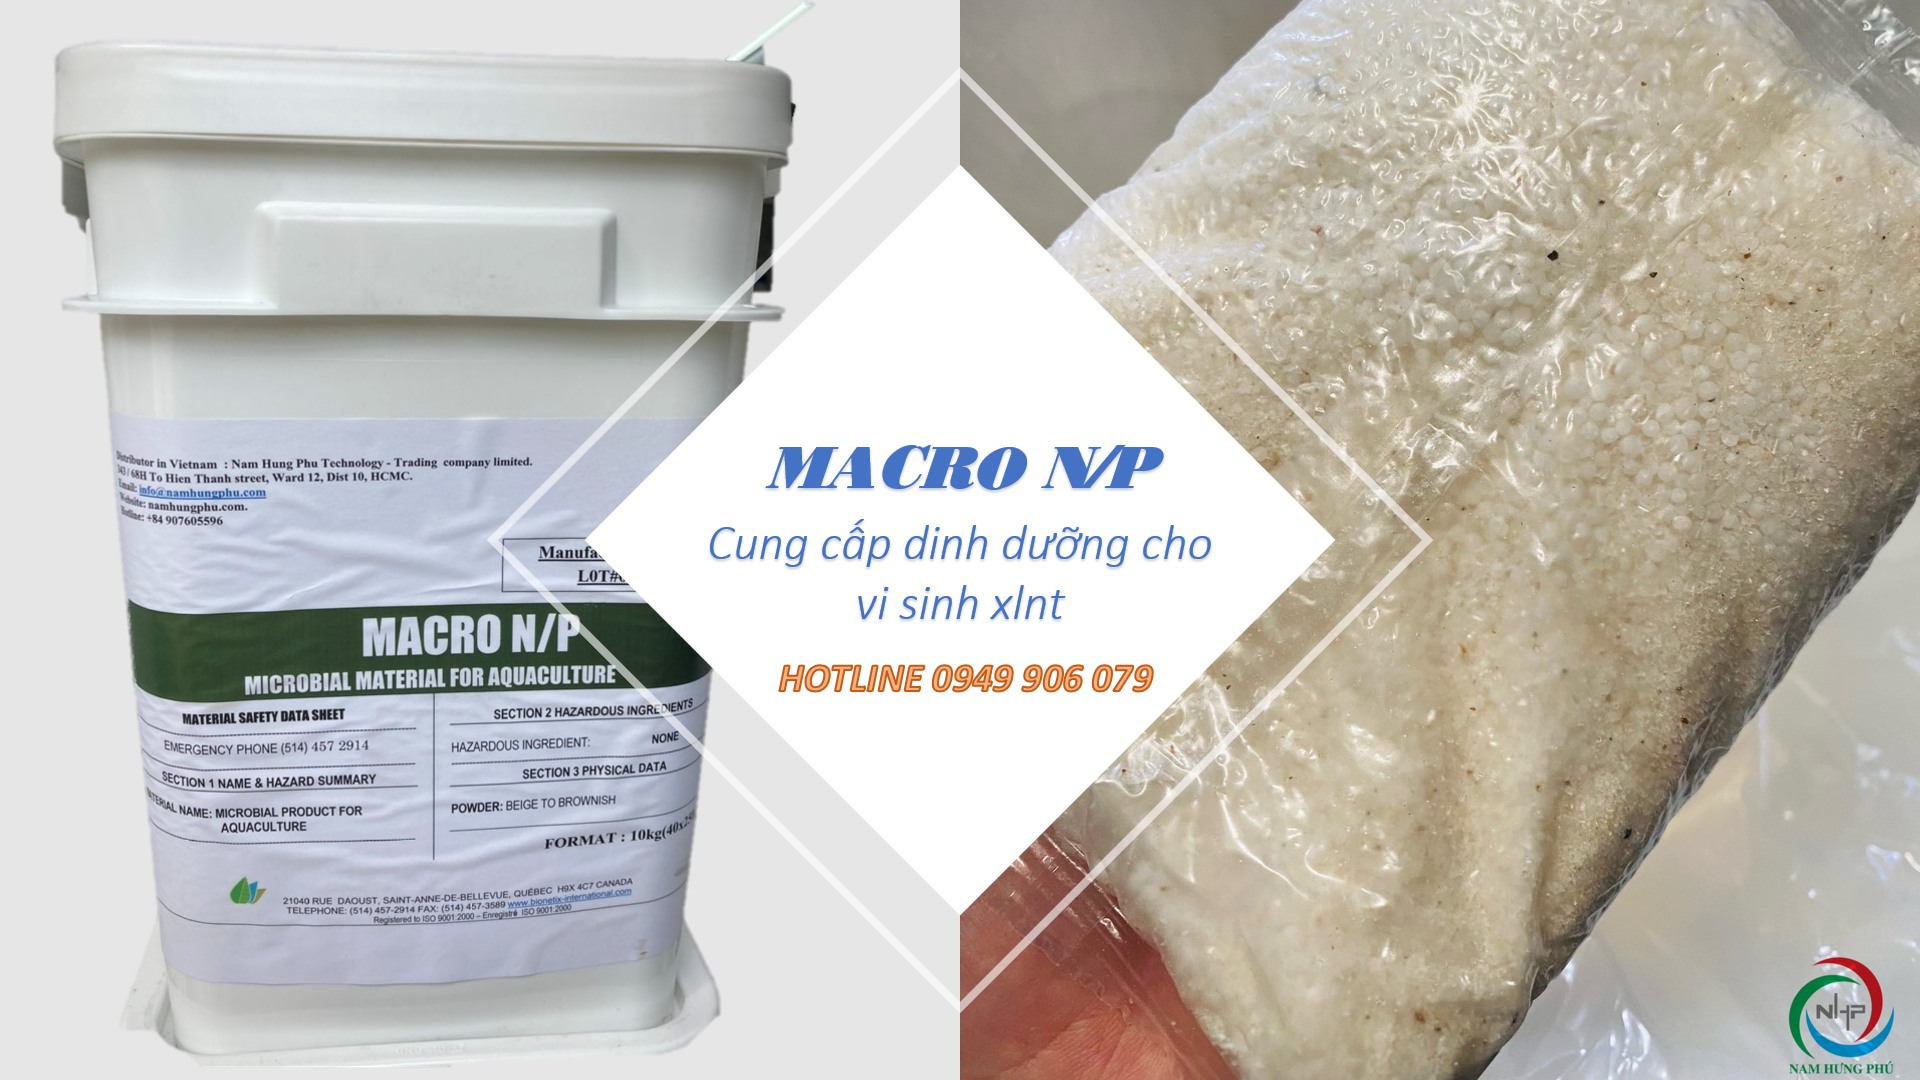 MACRO N/P dinh dưỡng cho vi sinh xử lý nước thải (0949906079)